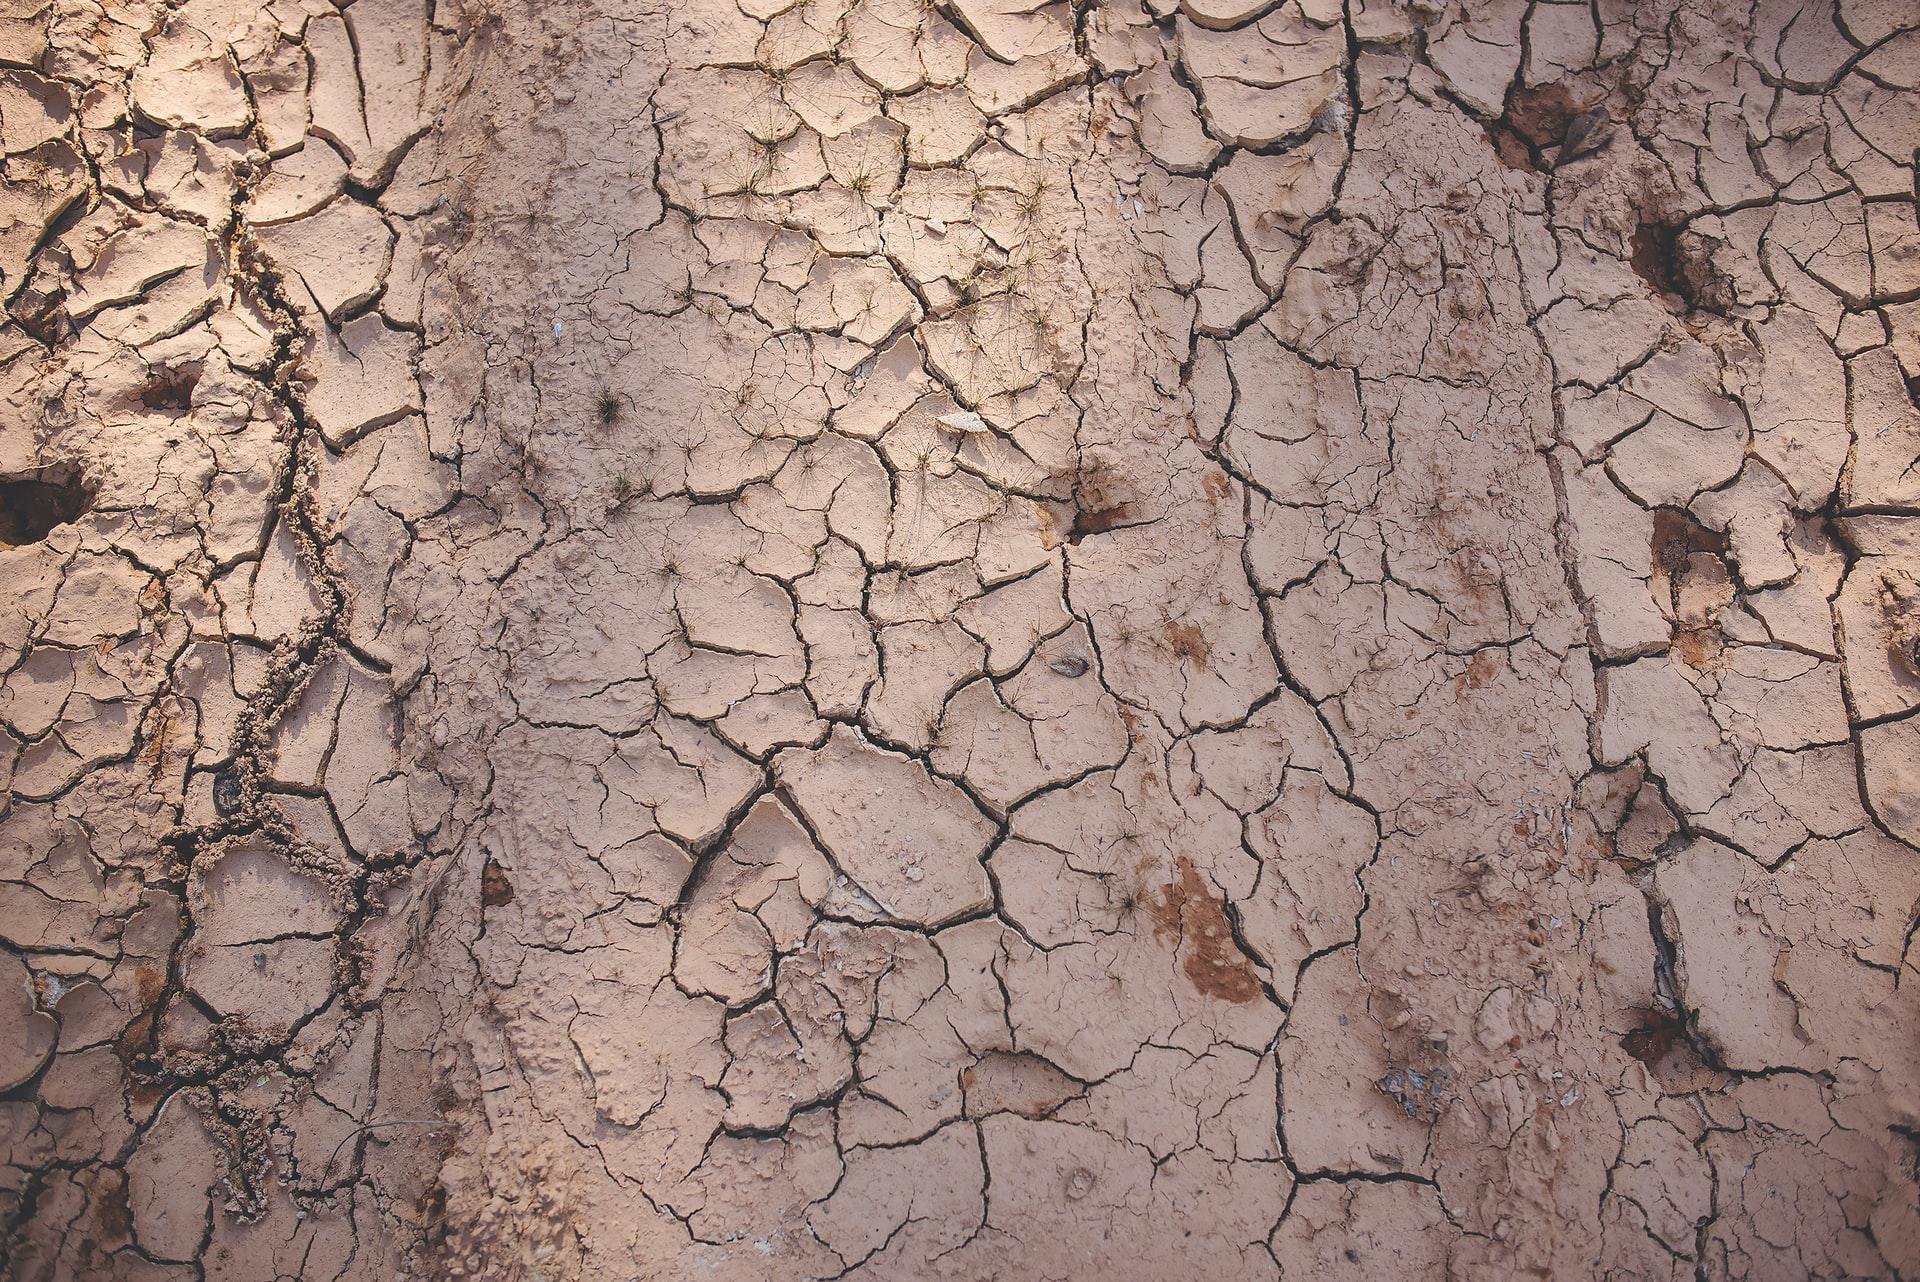 Com elevado teor de silte, solos siltosos são intermediários entre areia e argila e suscetíveis à erosão (Reprodução: Kasey McCoy/Unsplash)